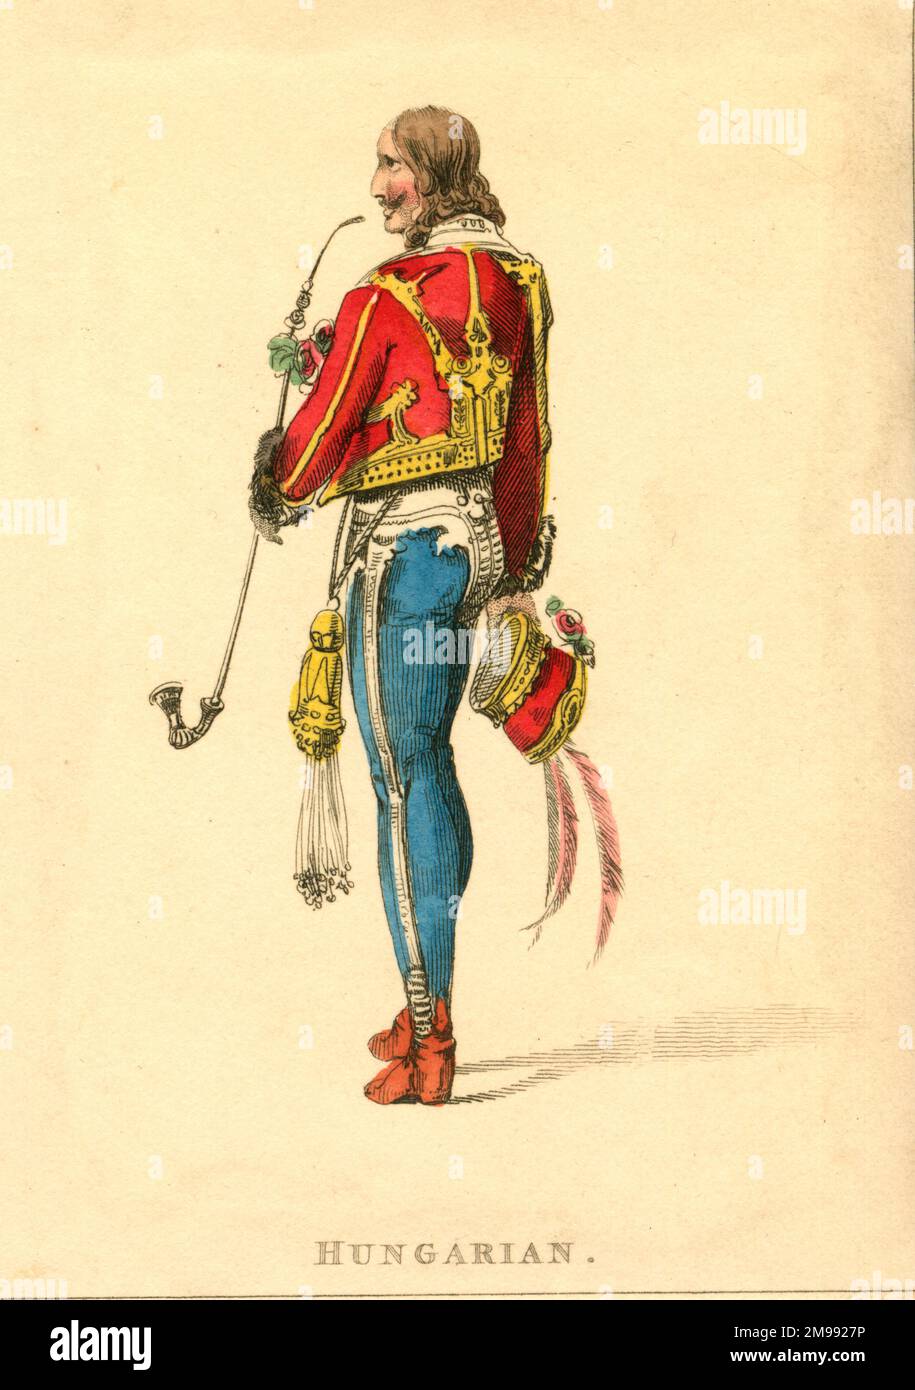 Costume, Hungarian man. Stock Photo